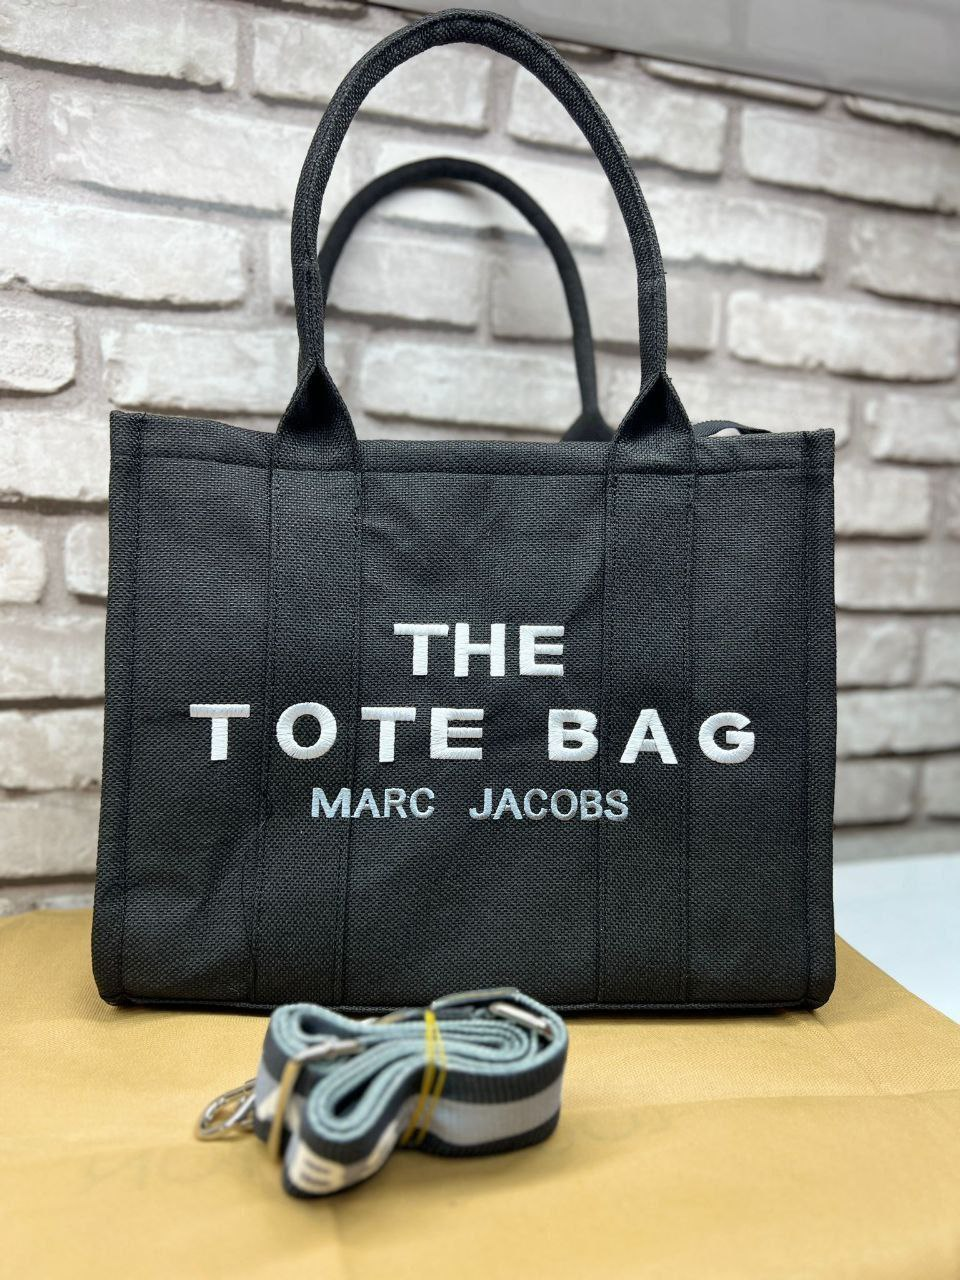 Жіноча сумка Marc Jacobs The Tote Bag 34*28*15см, Зе Тоте Бег 931424